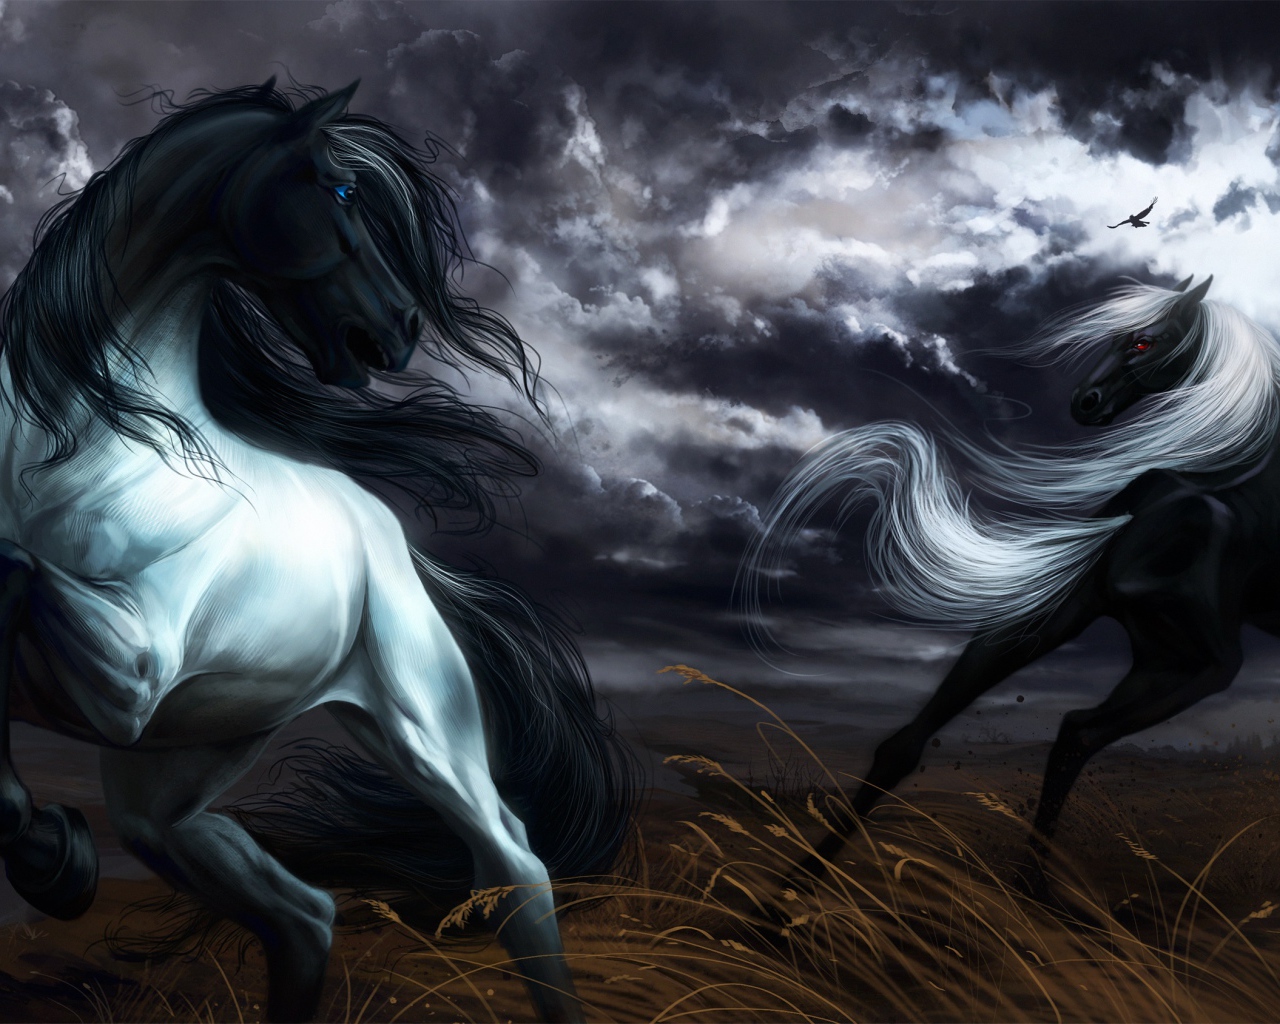 Две нарисованные черные лошади скачут под грозовым небом